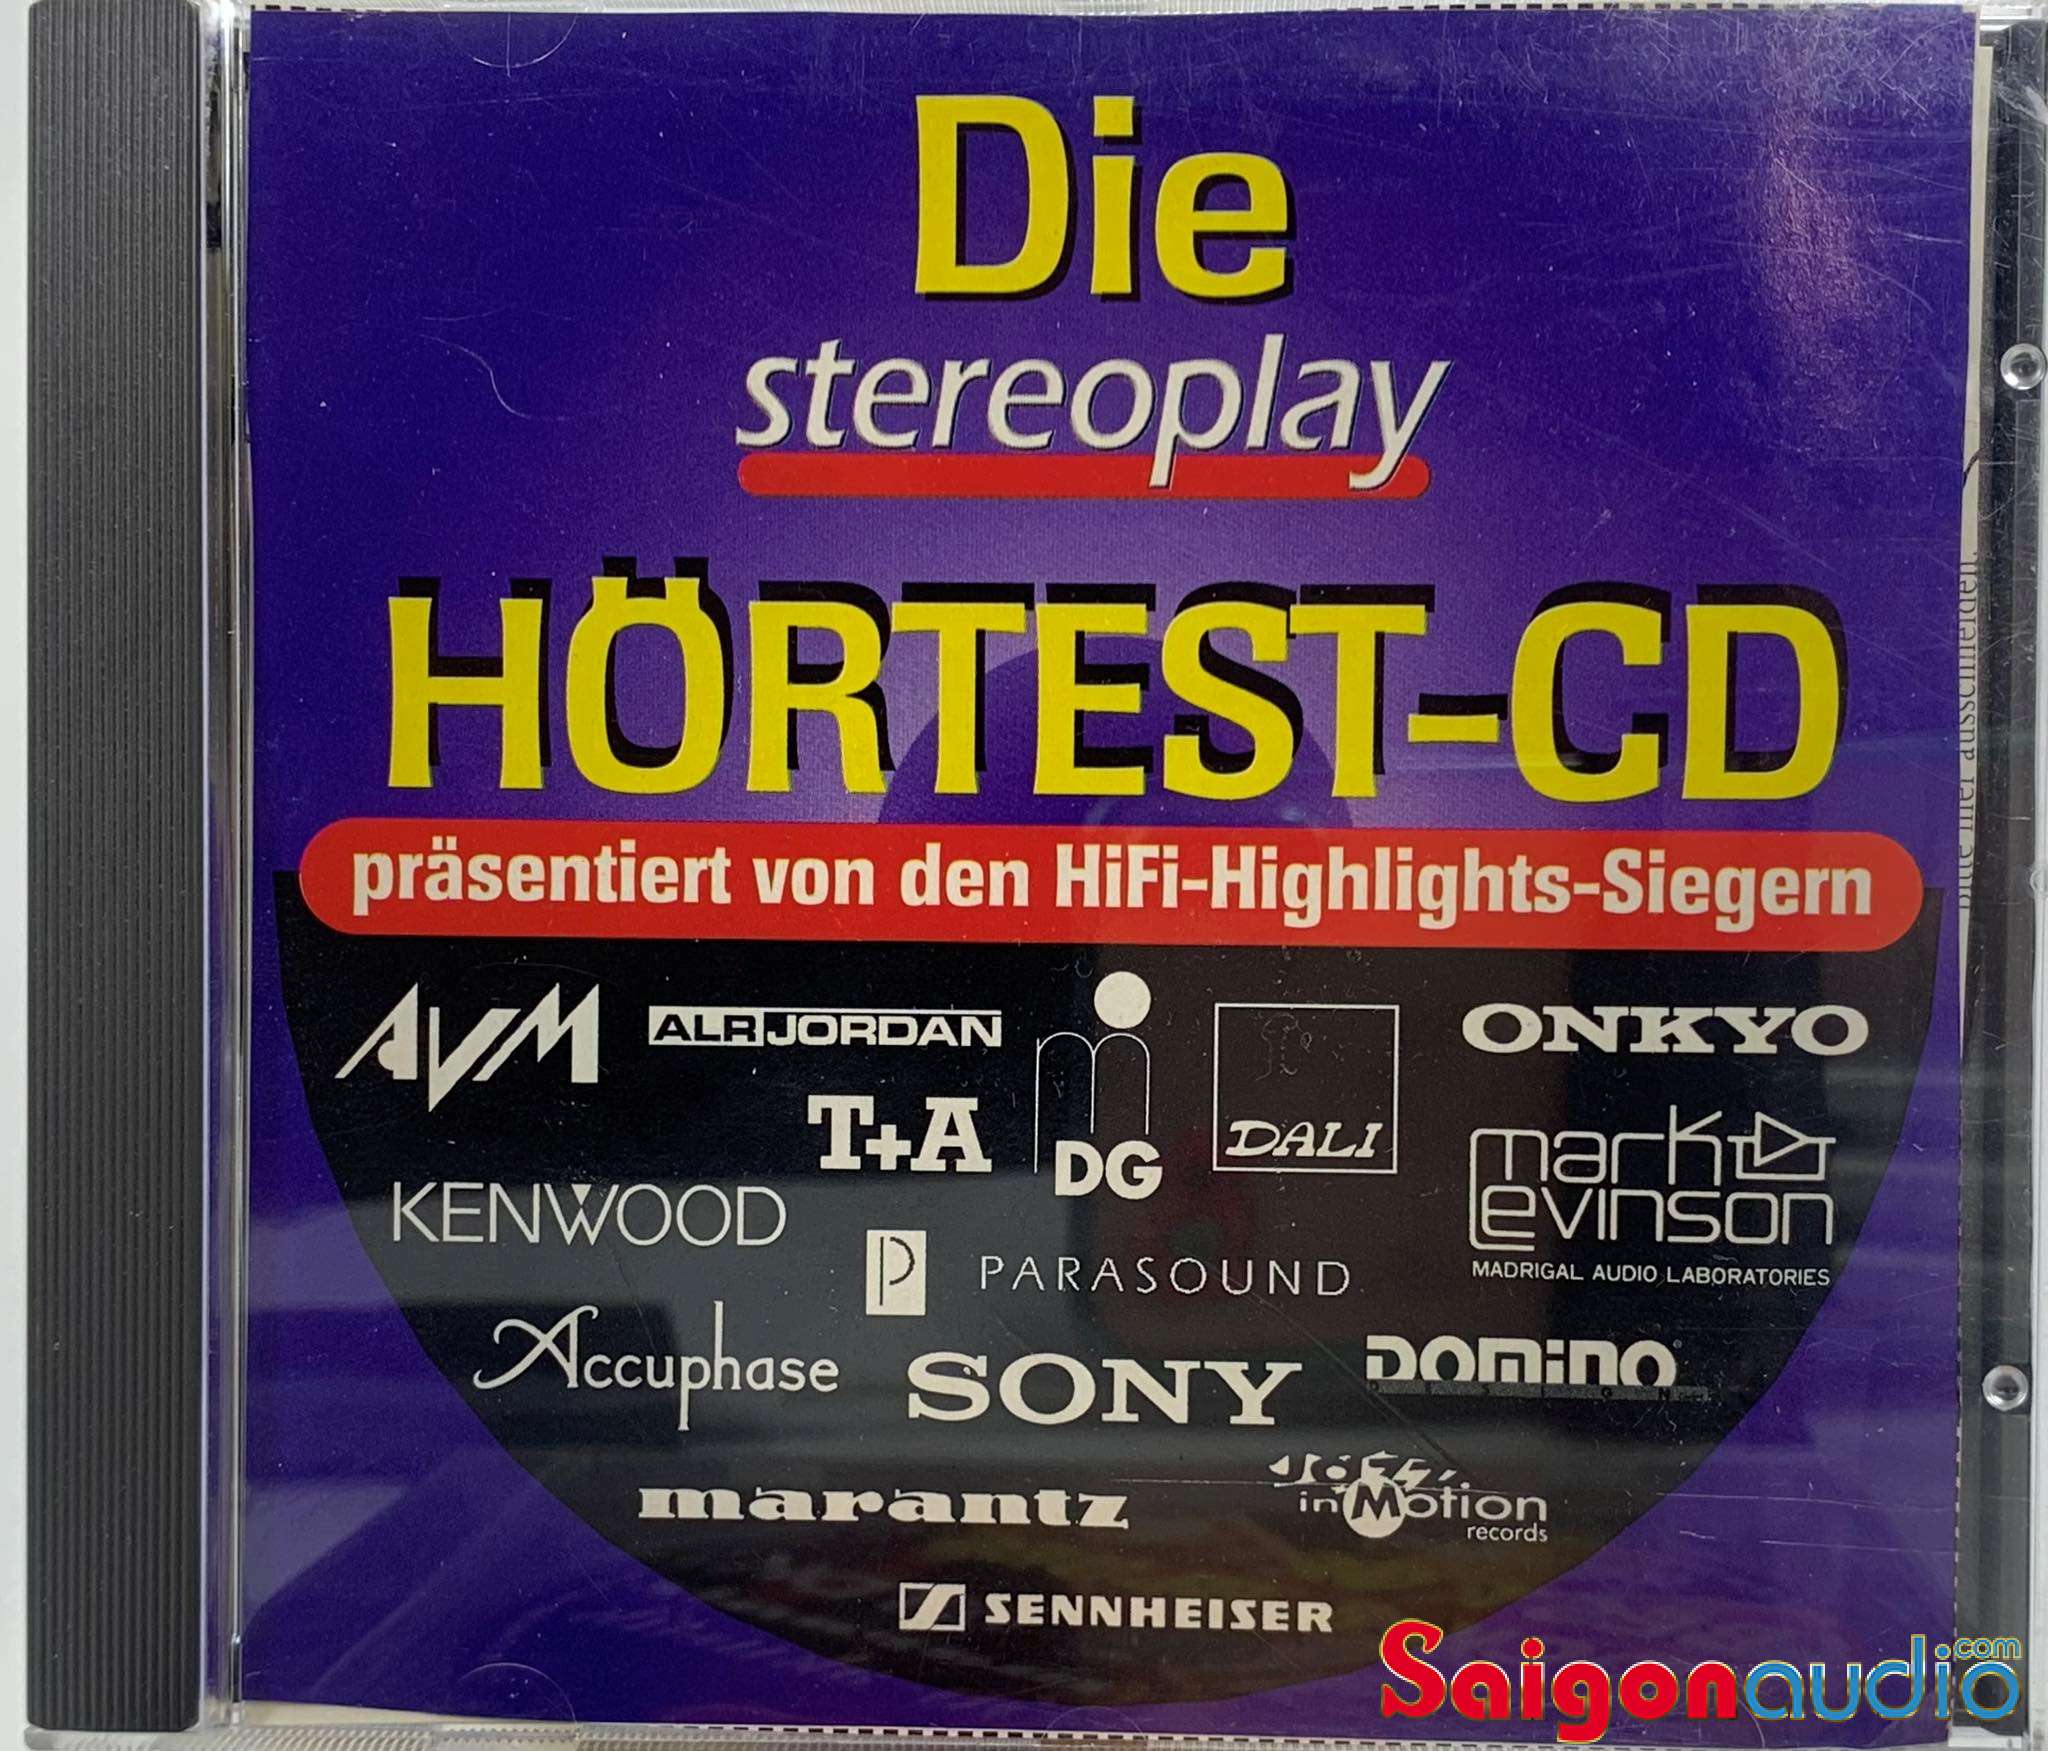 Đĩa CD gốc test dàn/ tần số Stereoplay Hörtest CD (Free ship khi mua 2 đĩa CD cùng hoặc khác loại)